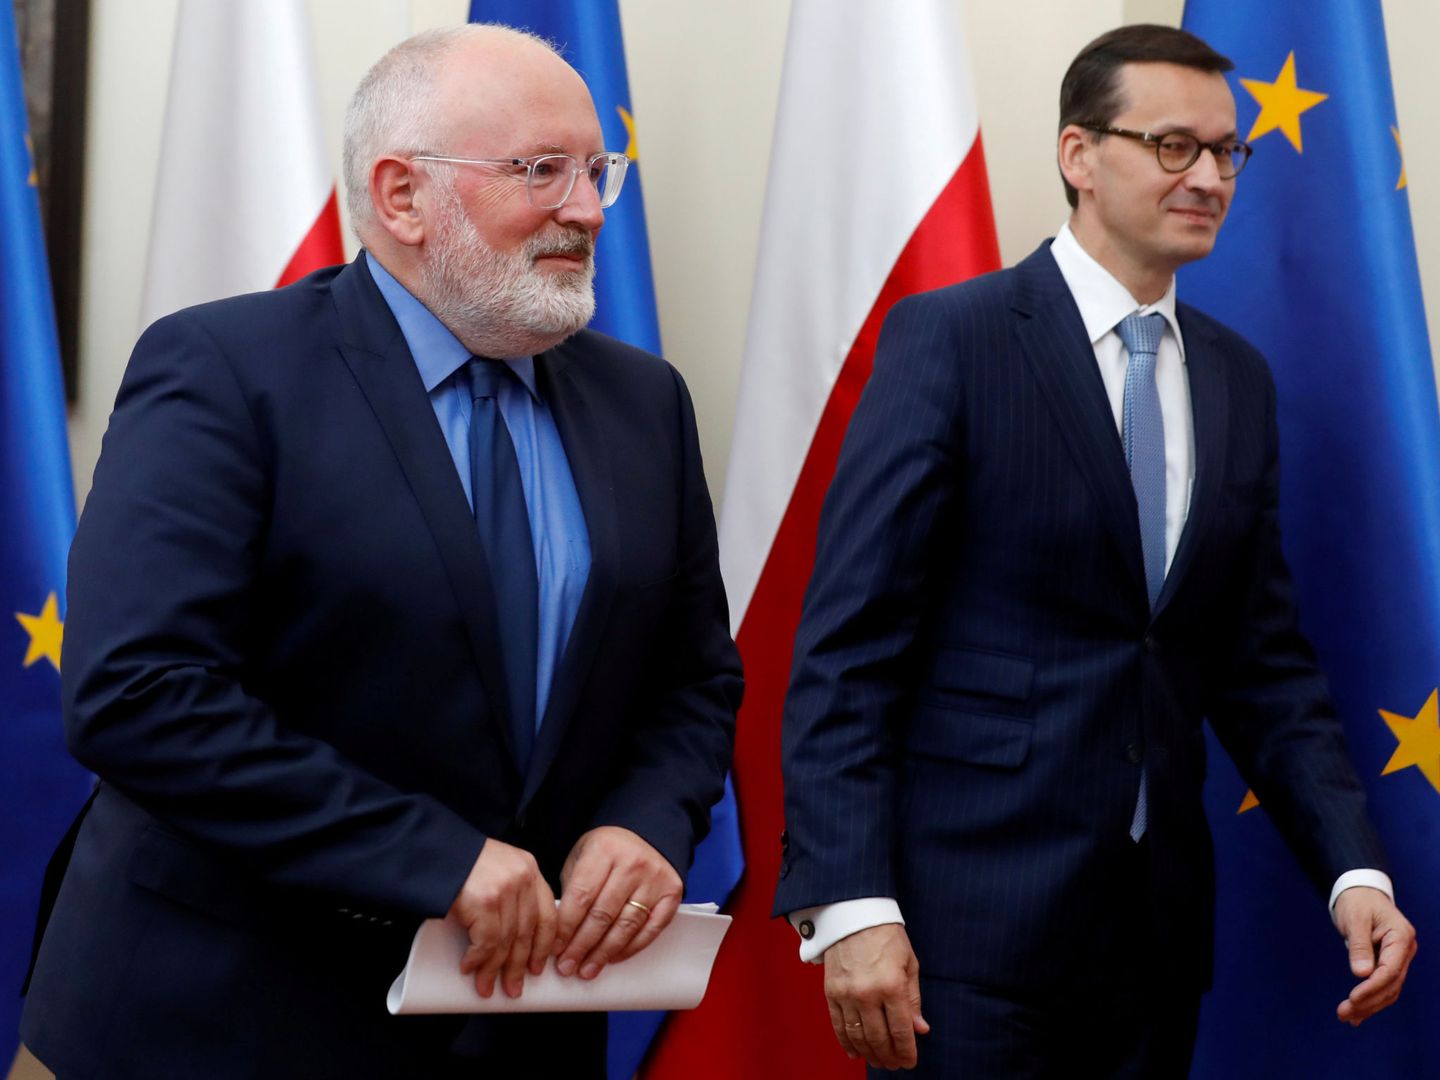 El vicepresidente de la Comisión Europea junto al primer ministro polaco. (Reuters)